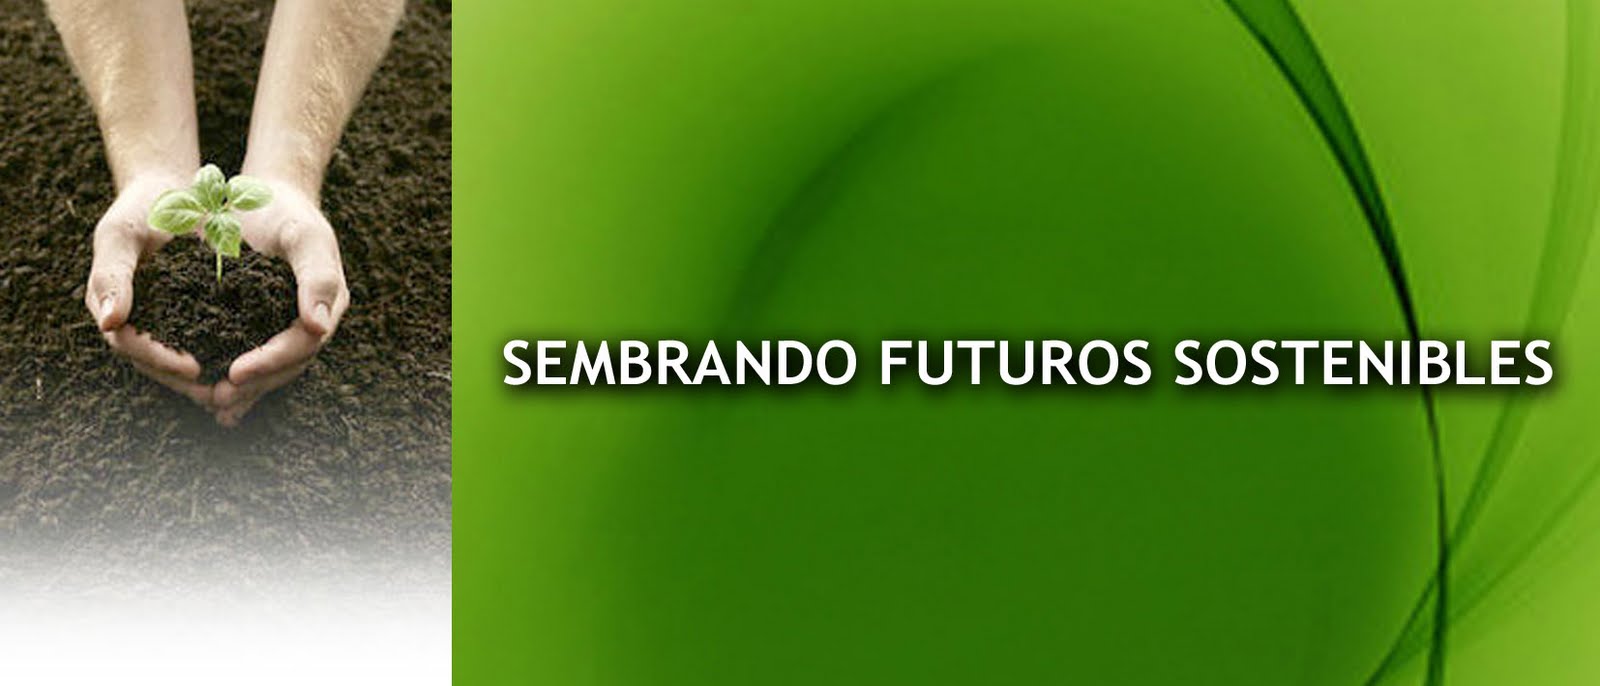 SEMBRANDO FUTUROS SOSTENIBLES